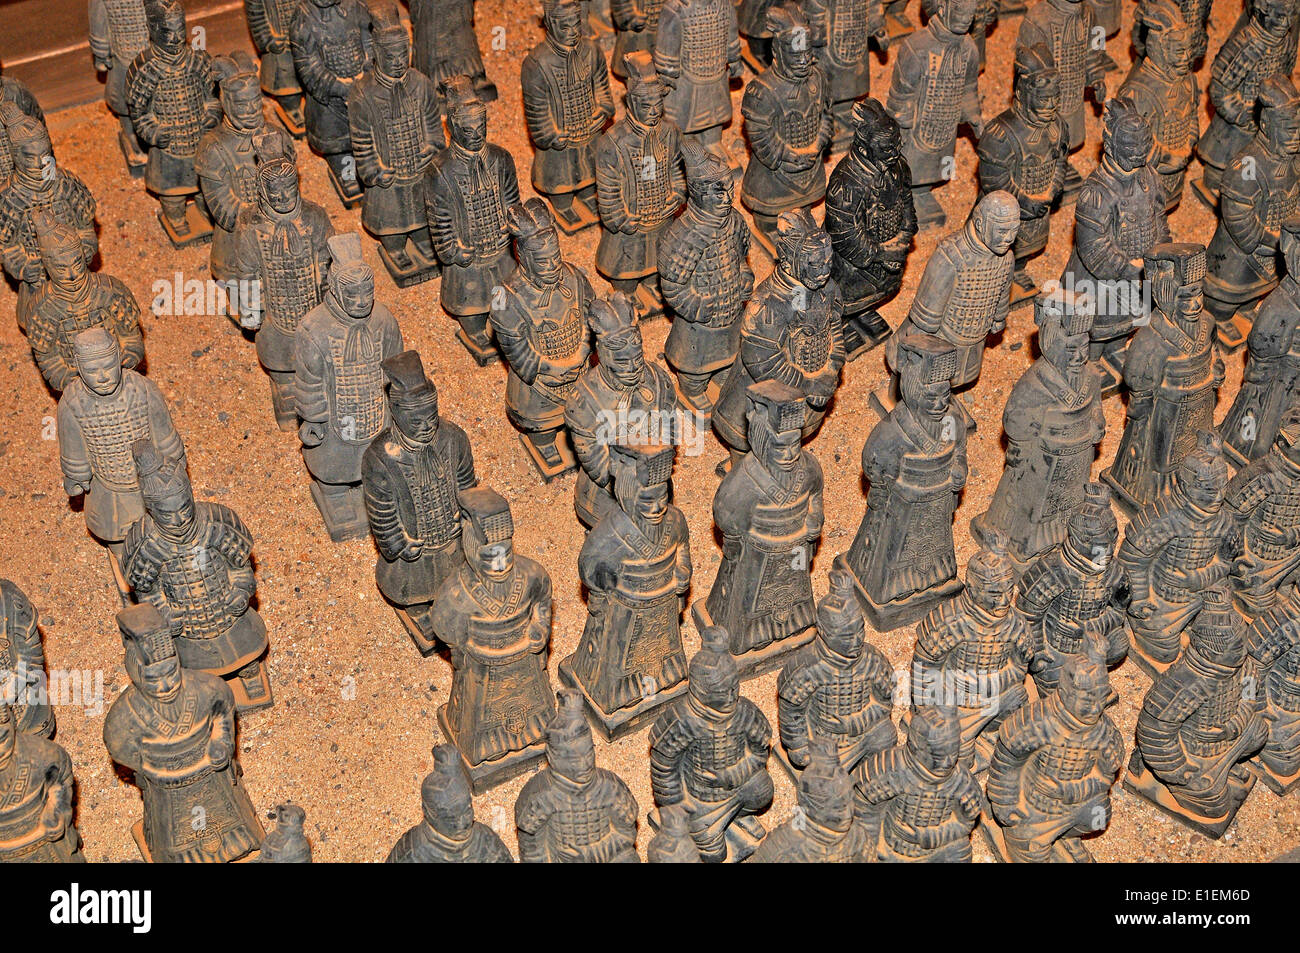 figurines de guerriers en terre cuite, Xi'an, Chine Banque D'Images